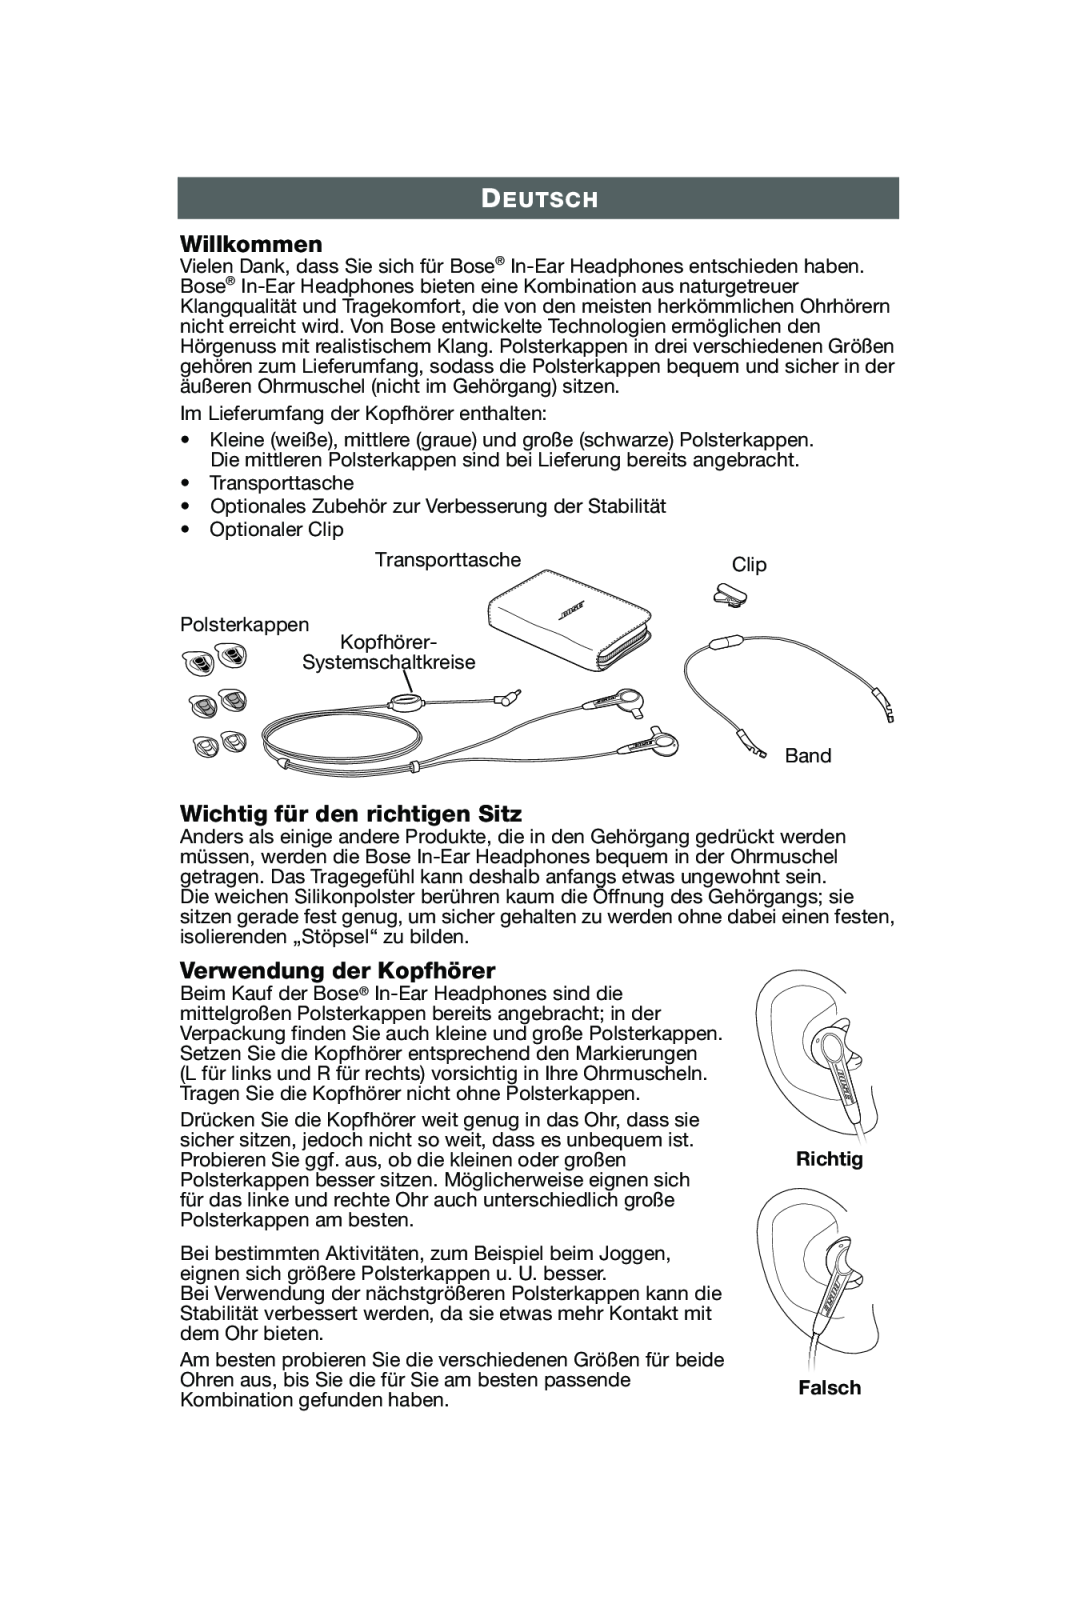 Bose In-Ear Headphones manual Willkommen, Wichtig für den richtigen Sitz, Verwendung der Kopfhörer, Deutsch, Richtig Falsch 